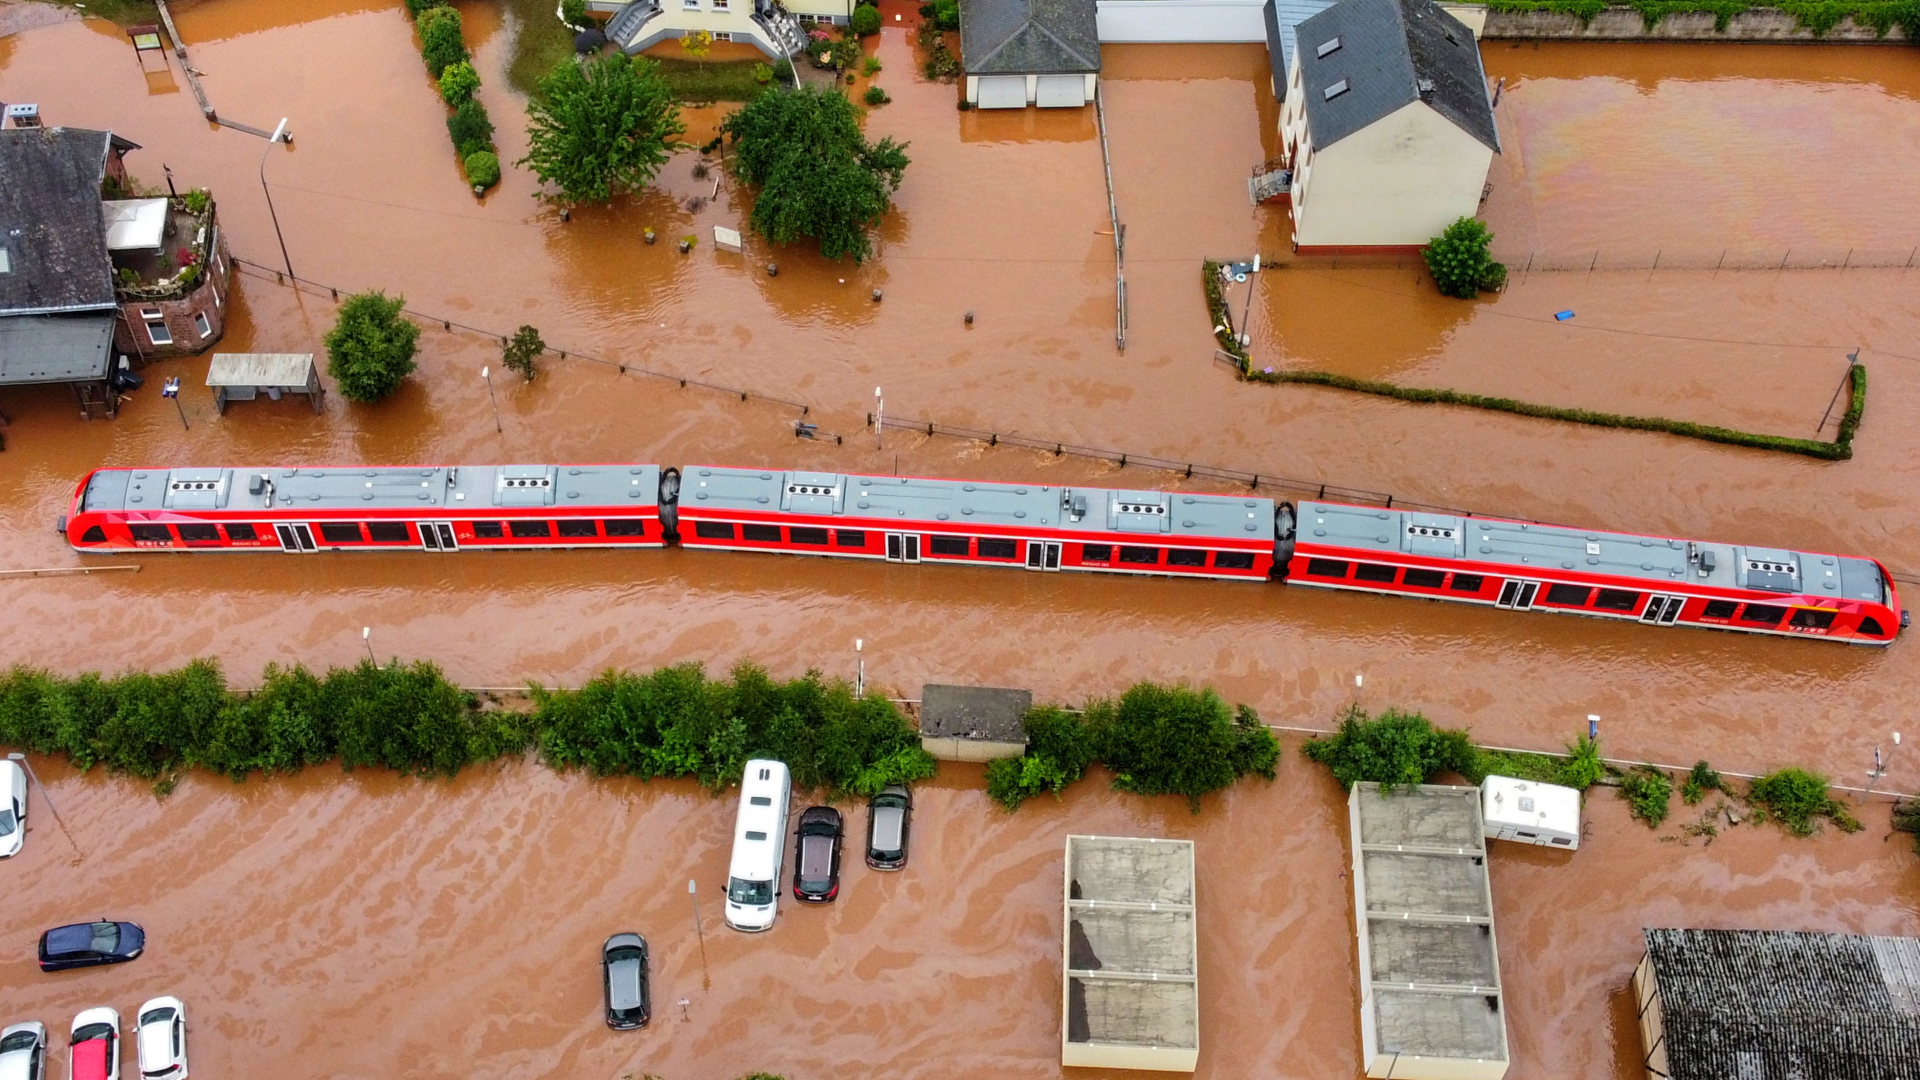 Liegengebliebener Zug in überschwemmten Gelände | dpa